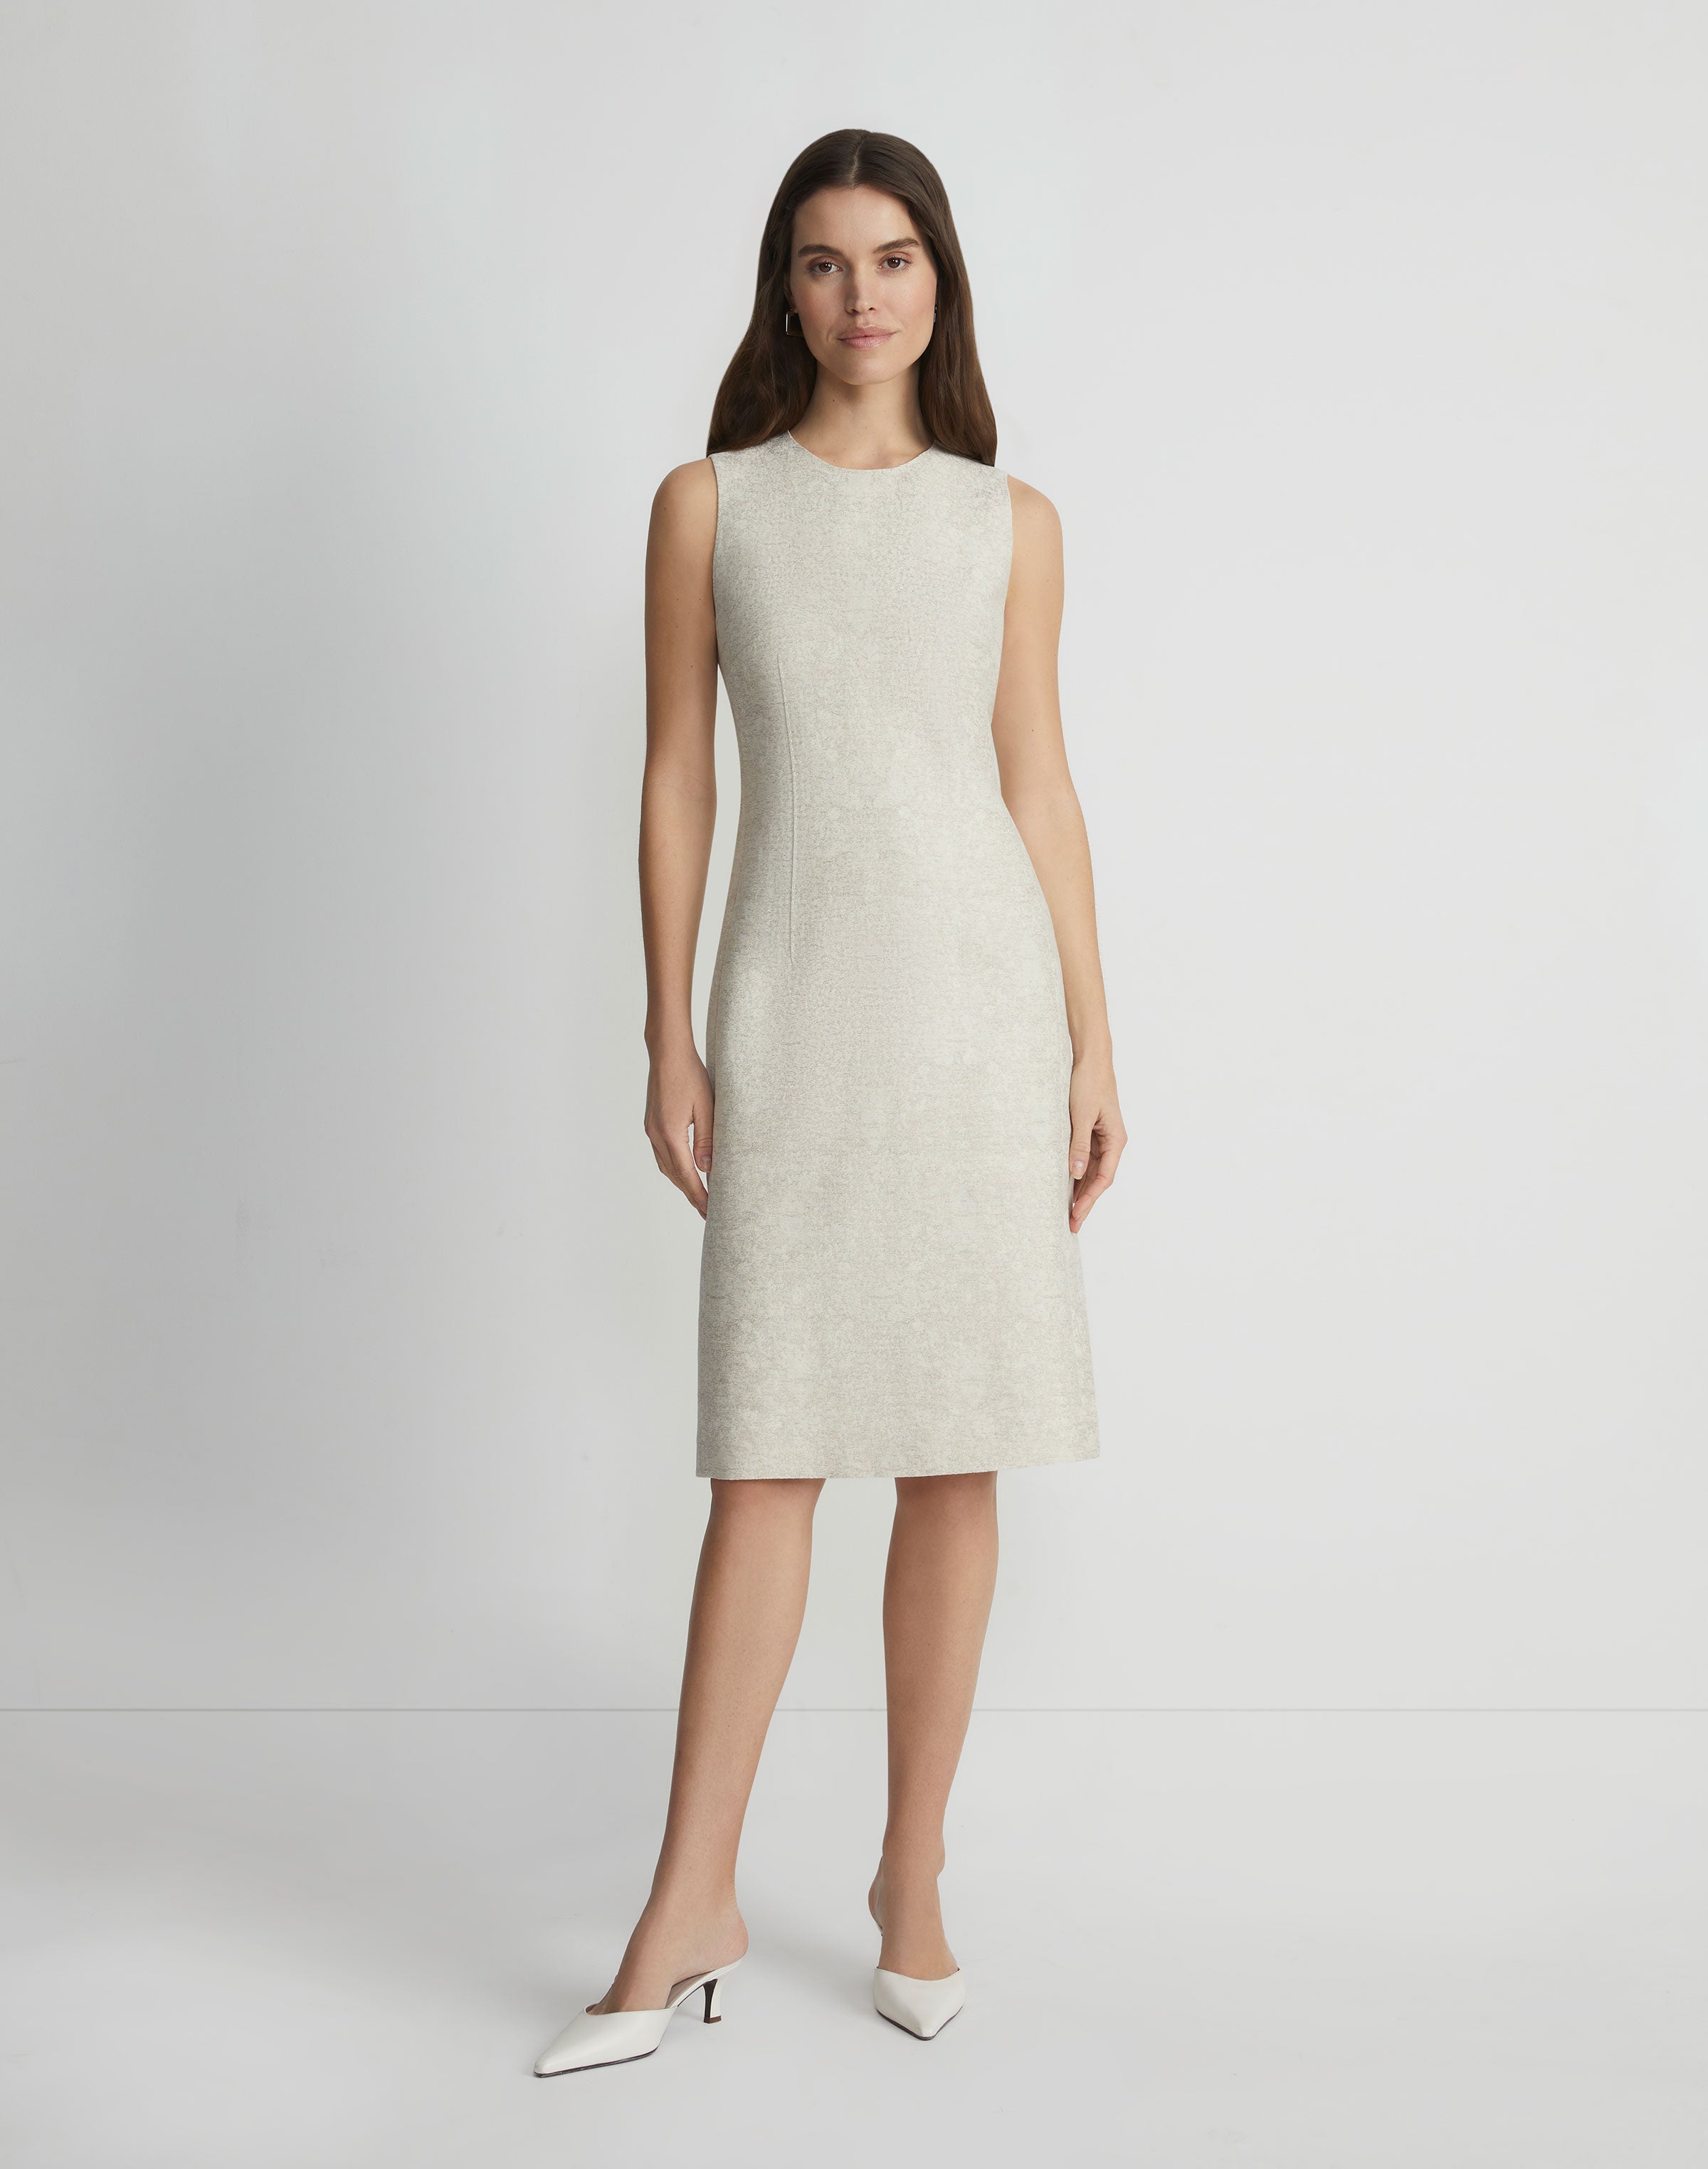 Textured Jacquard Cotton-Linen Sheath Dress – Ballin's LTD